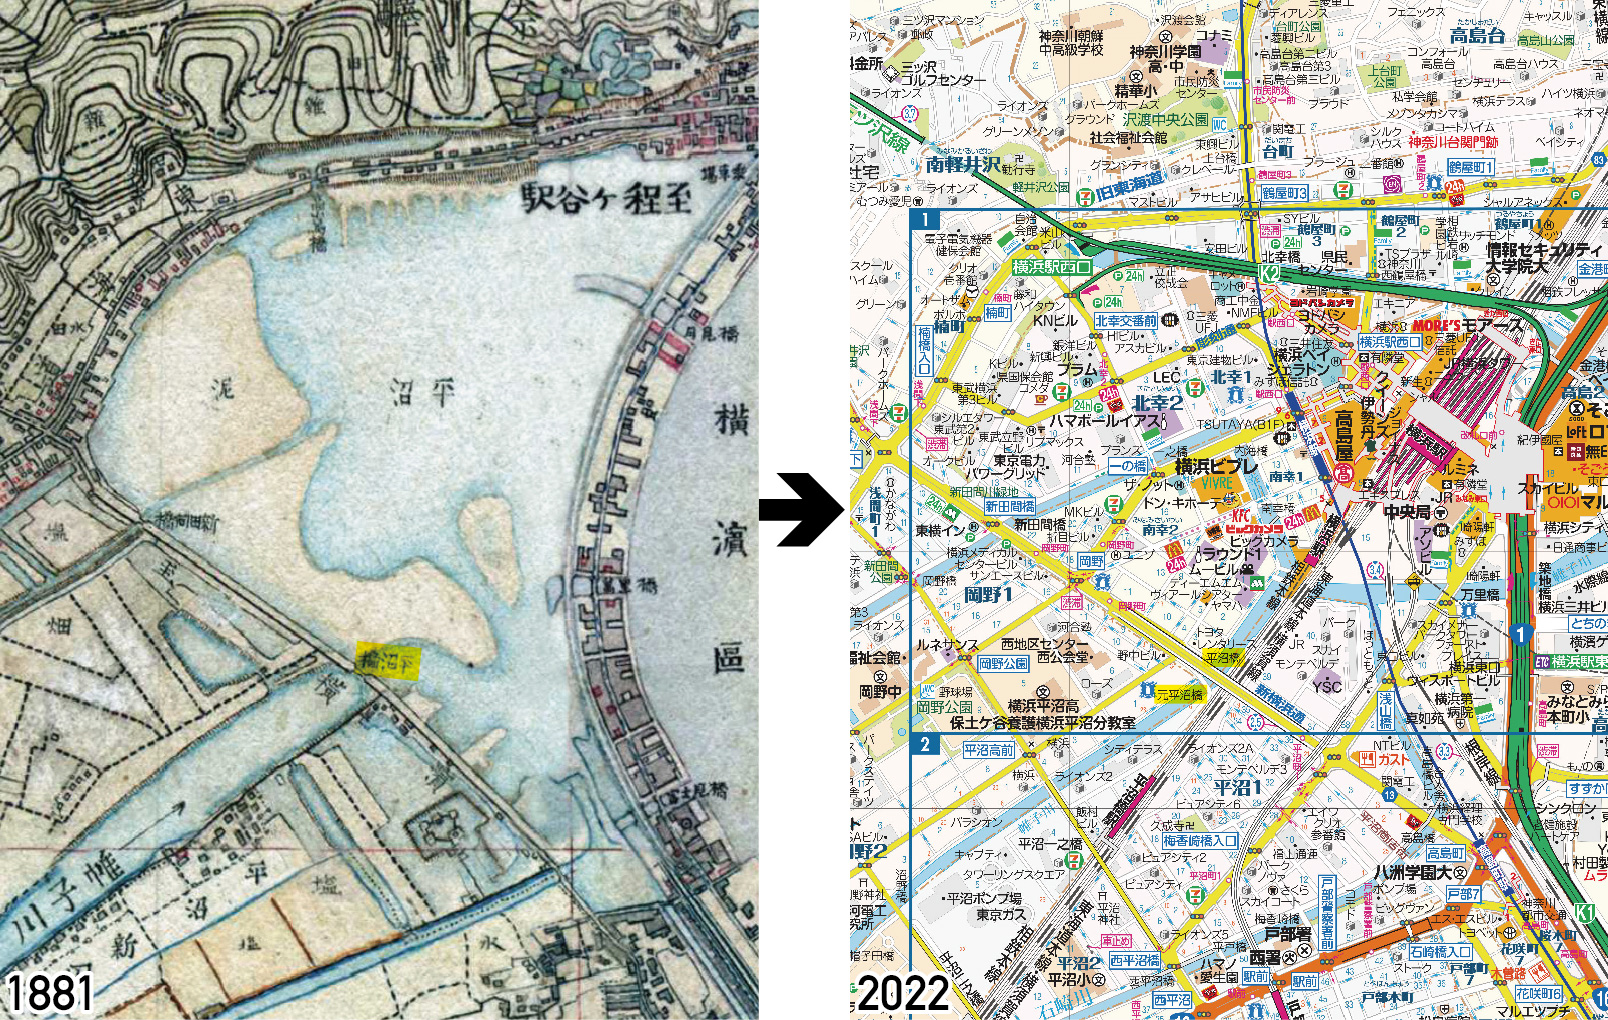 横浜の中心市街地は移動する 古地図から見る街の移り変わり まっぷるトラベルガイド